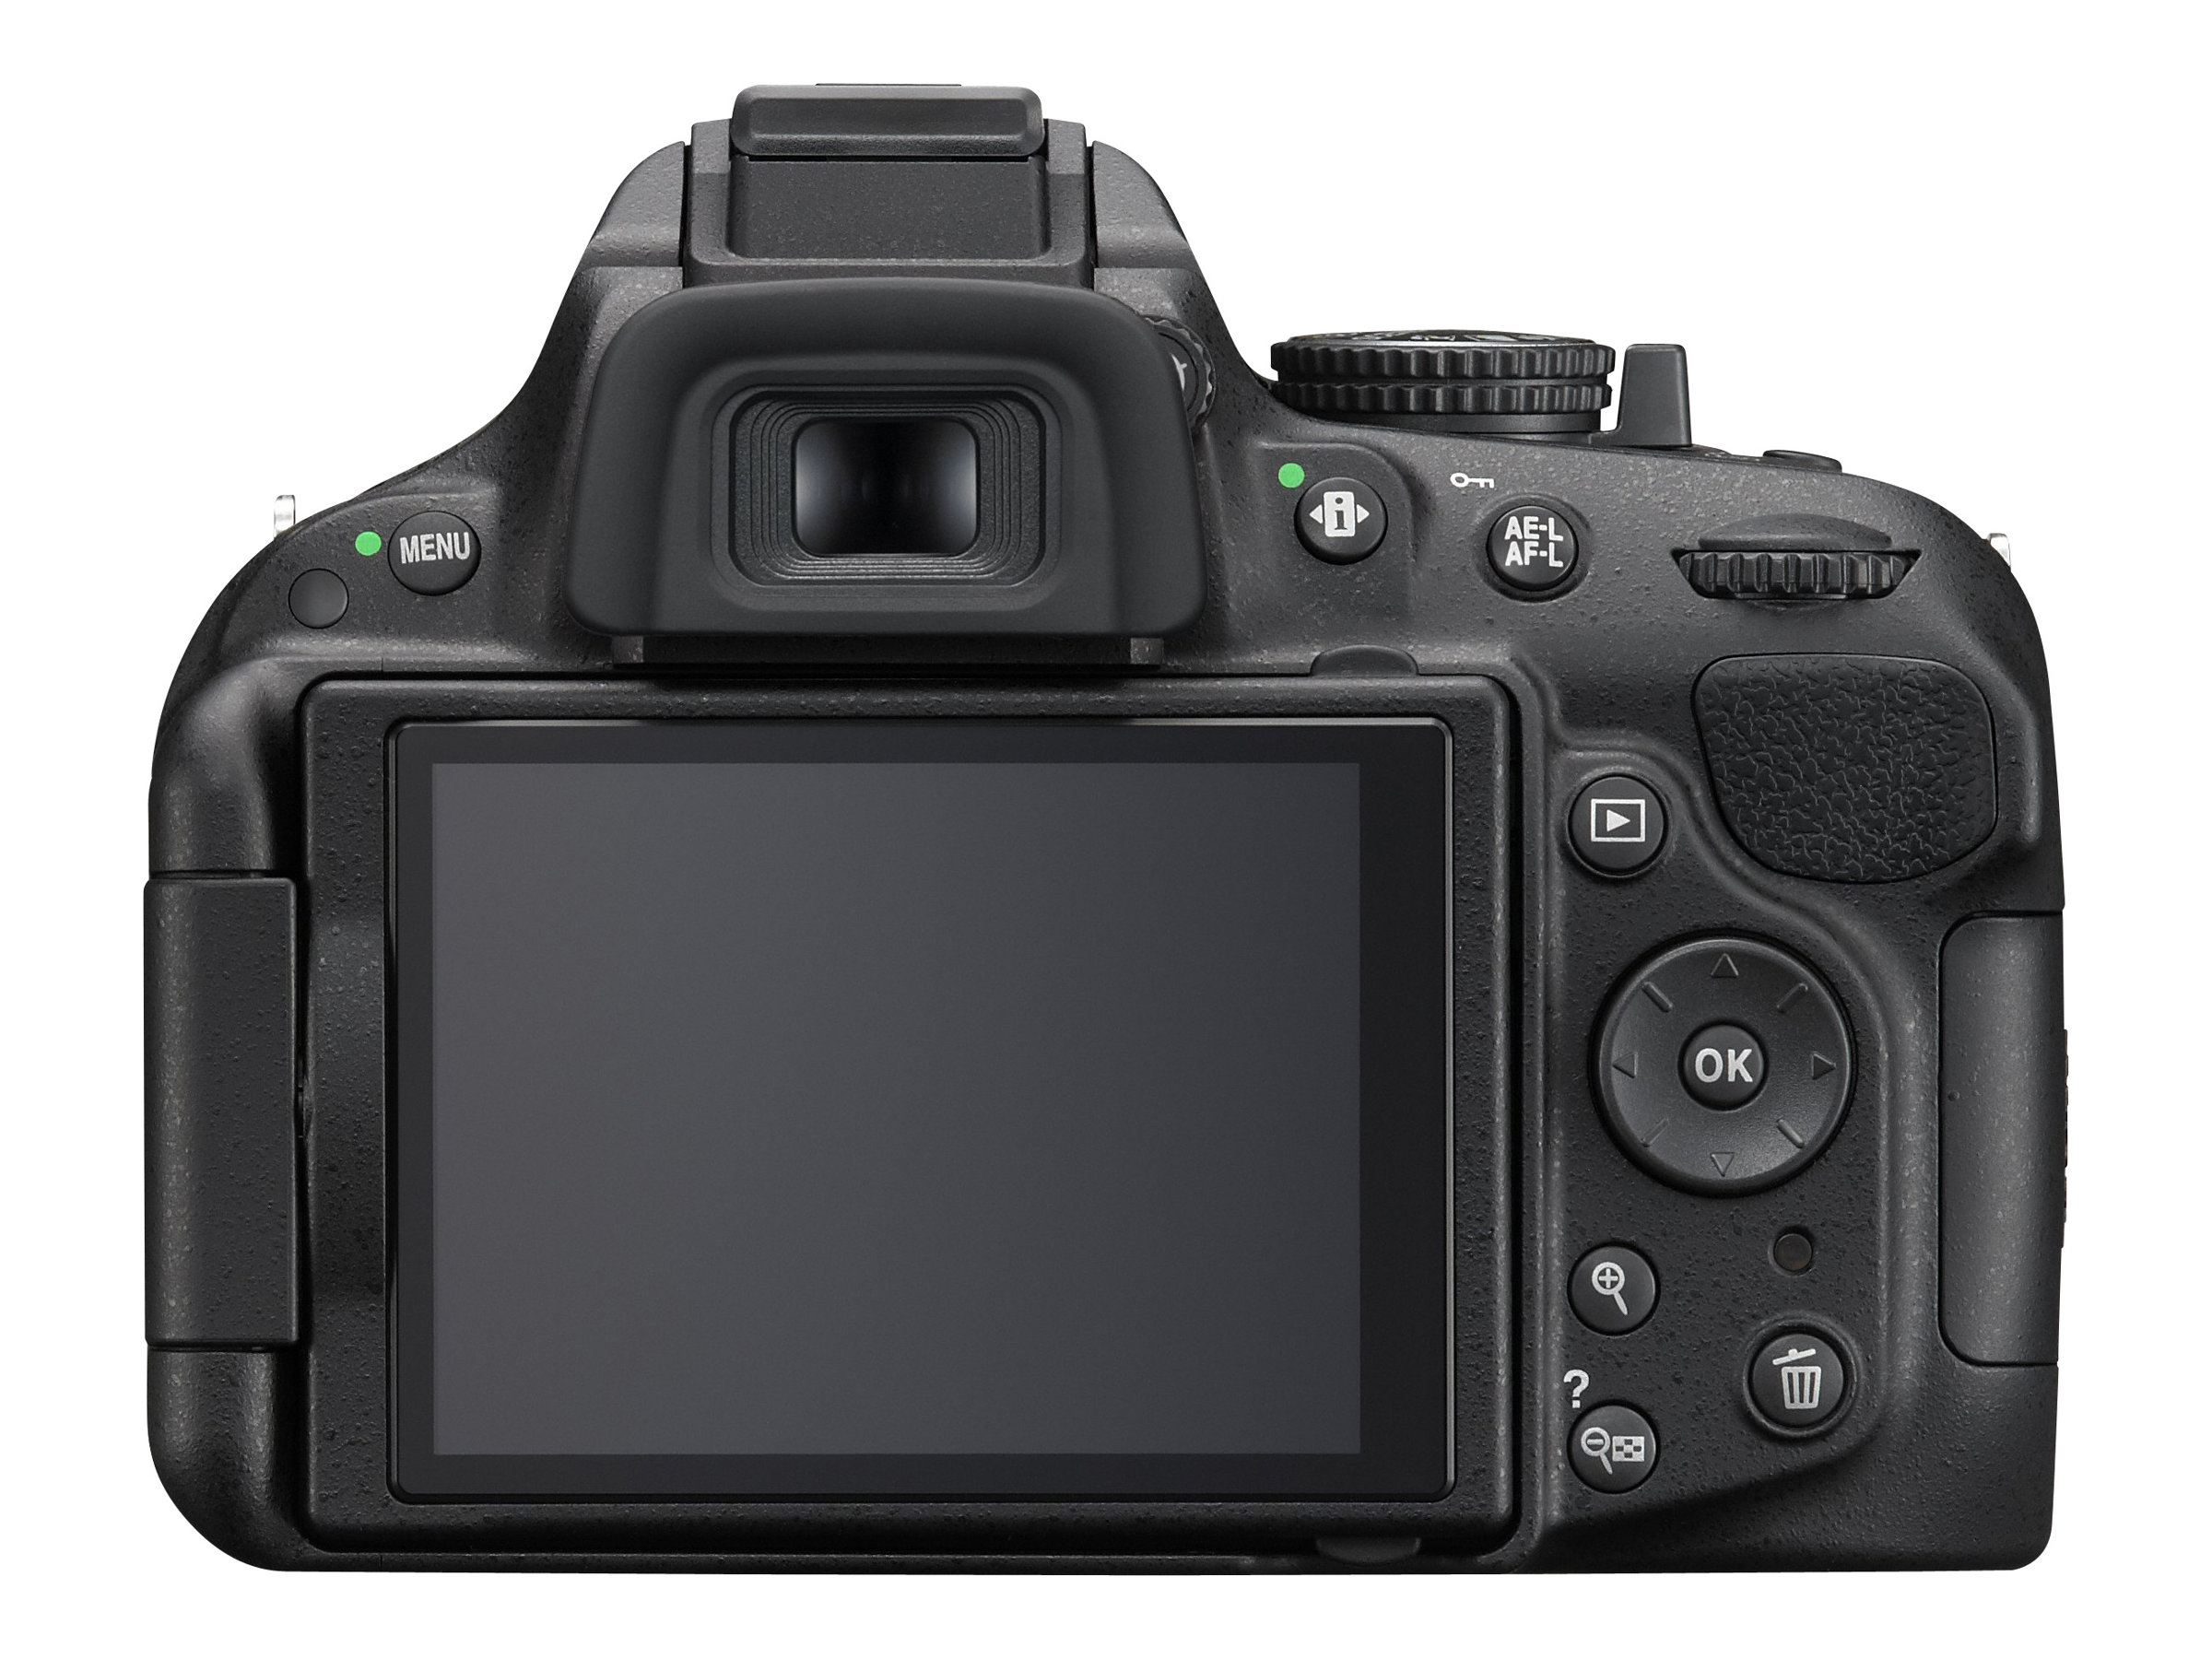 Nikon D5200/D5600 DSLR Camera with Nikon 18-140mm VR DX Lens - image 4 of 5